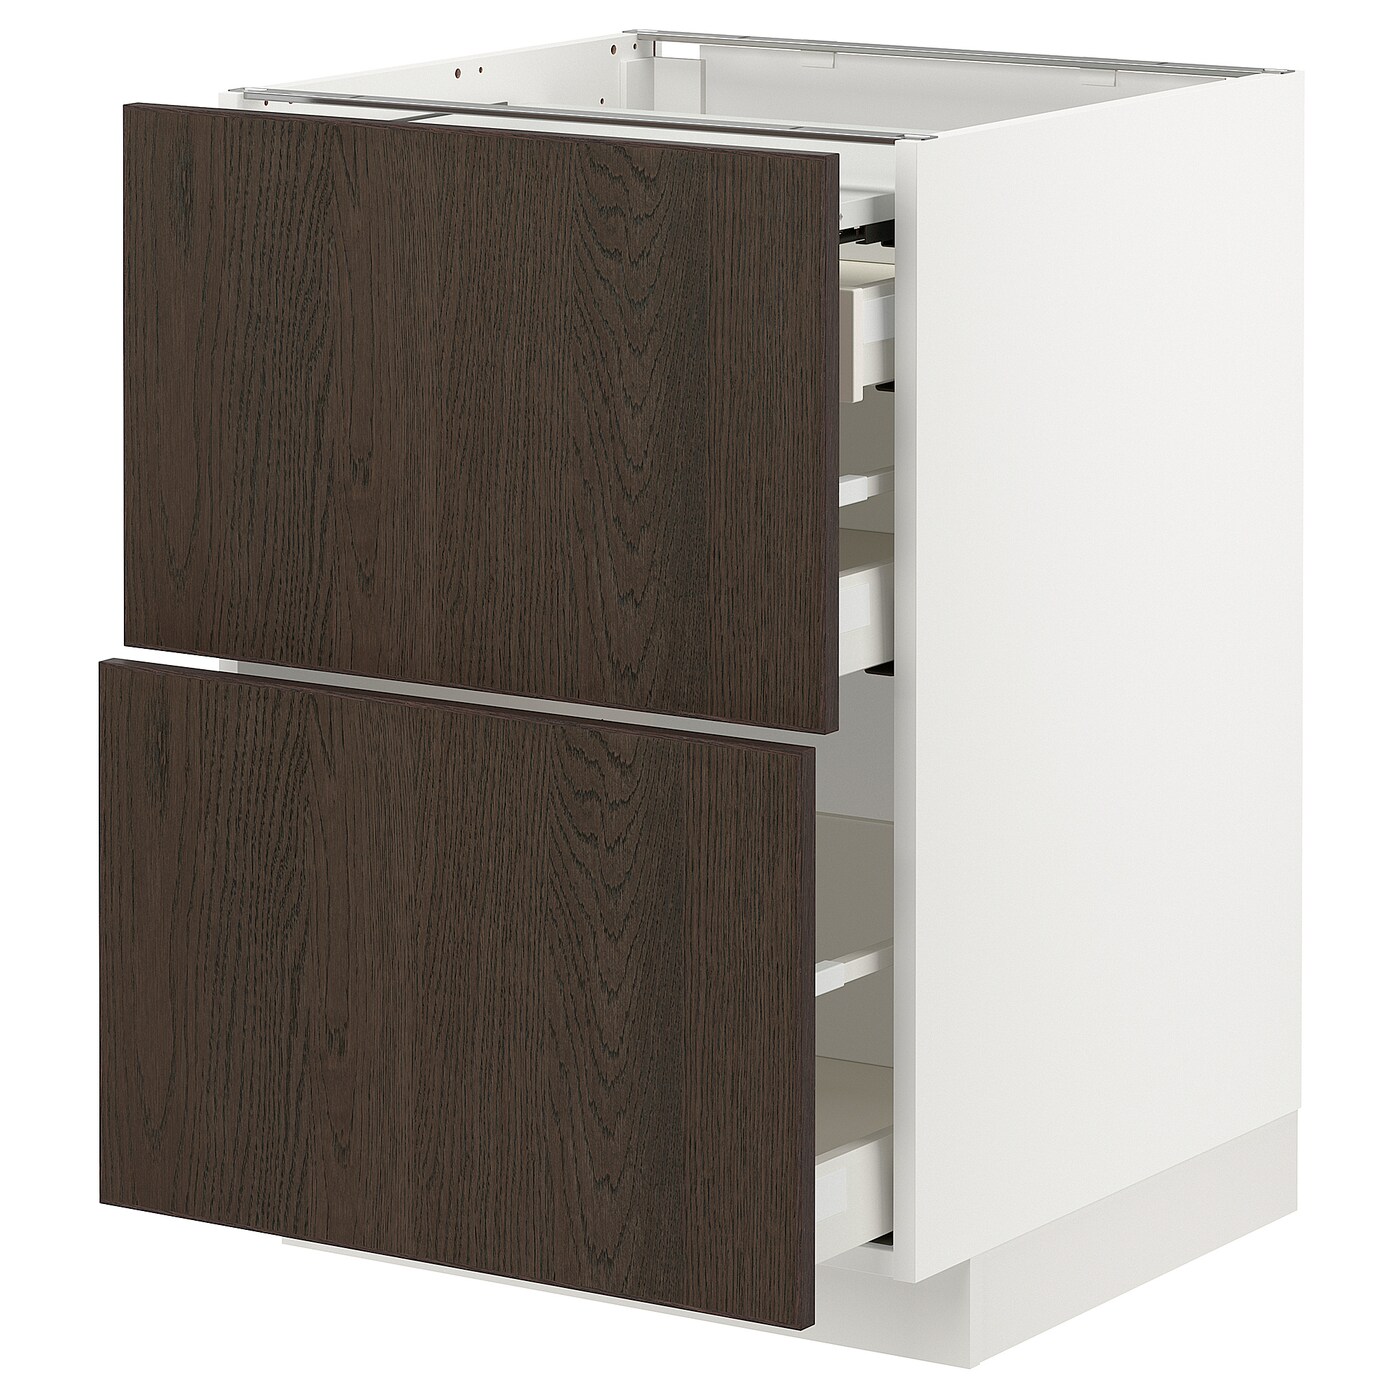 Напольный шкаф - IKEA METOD MAXIMERA, 88x62x60см, белый/коричневый, МЕТОД МАКСИМЕРА ИКЕА